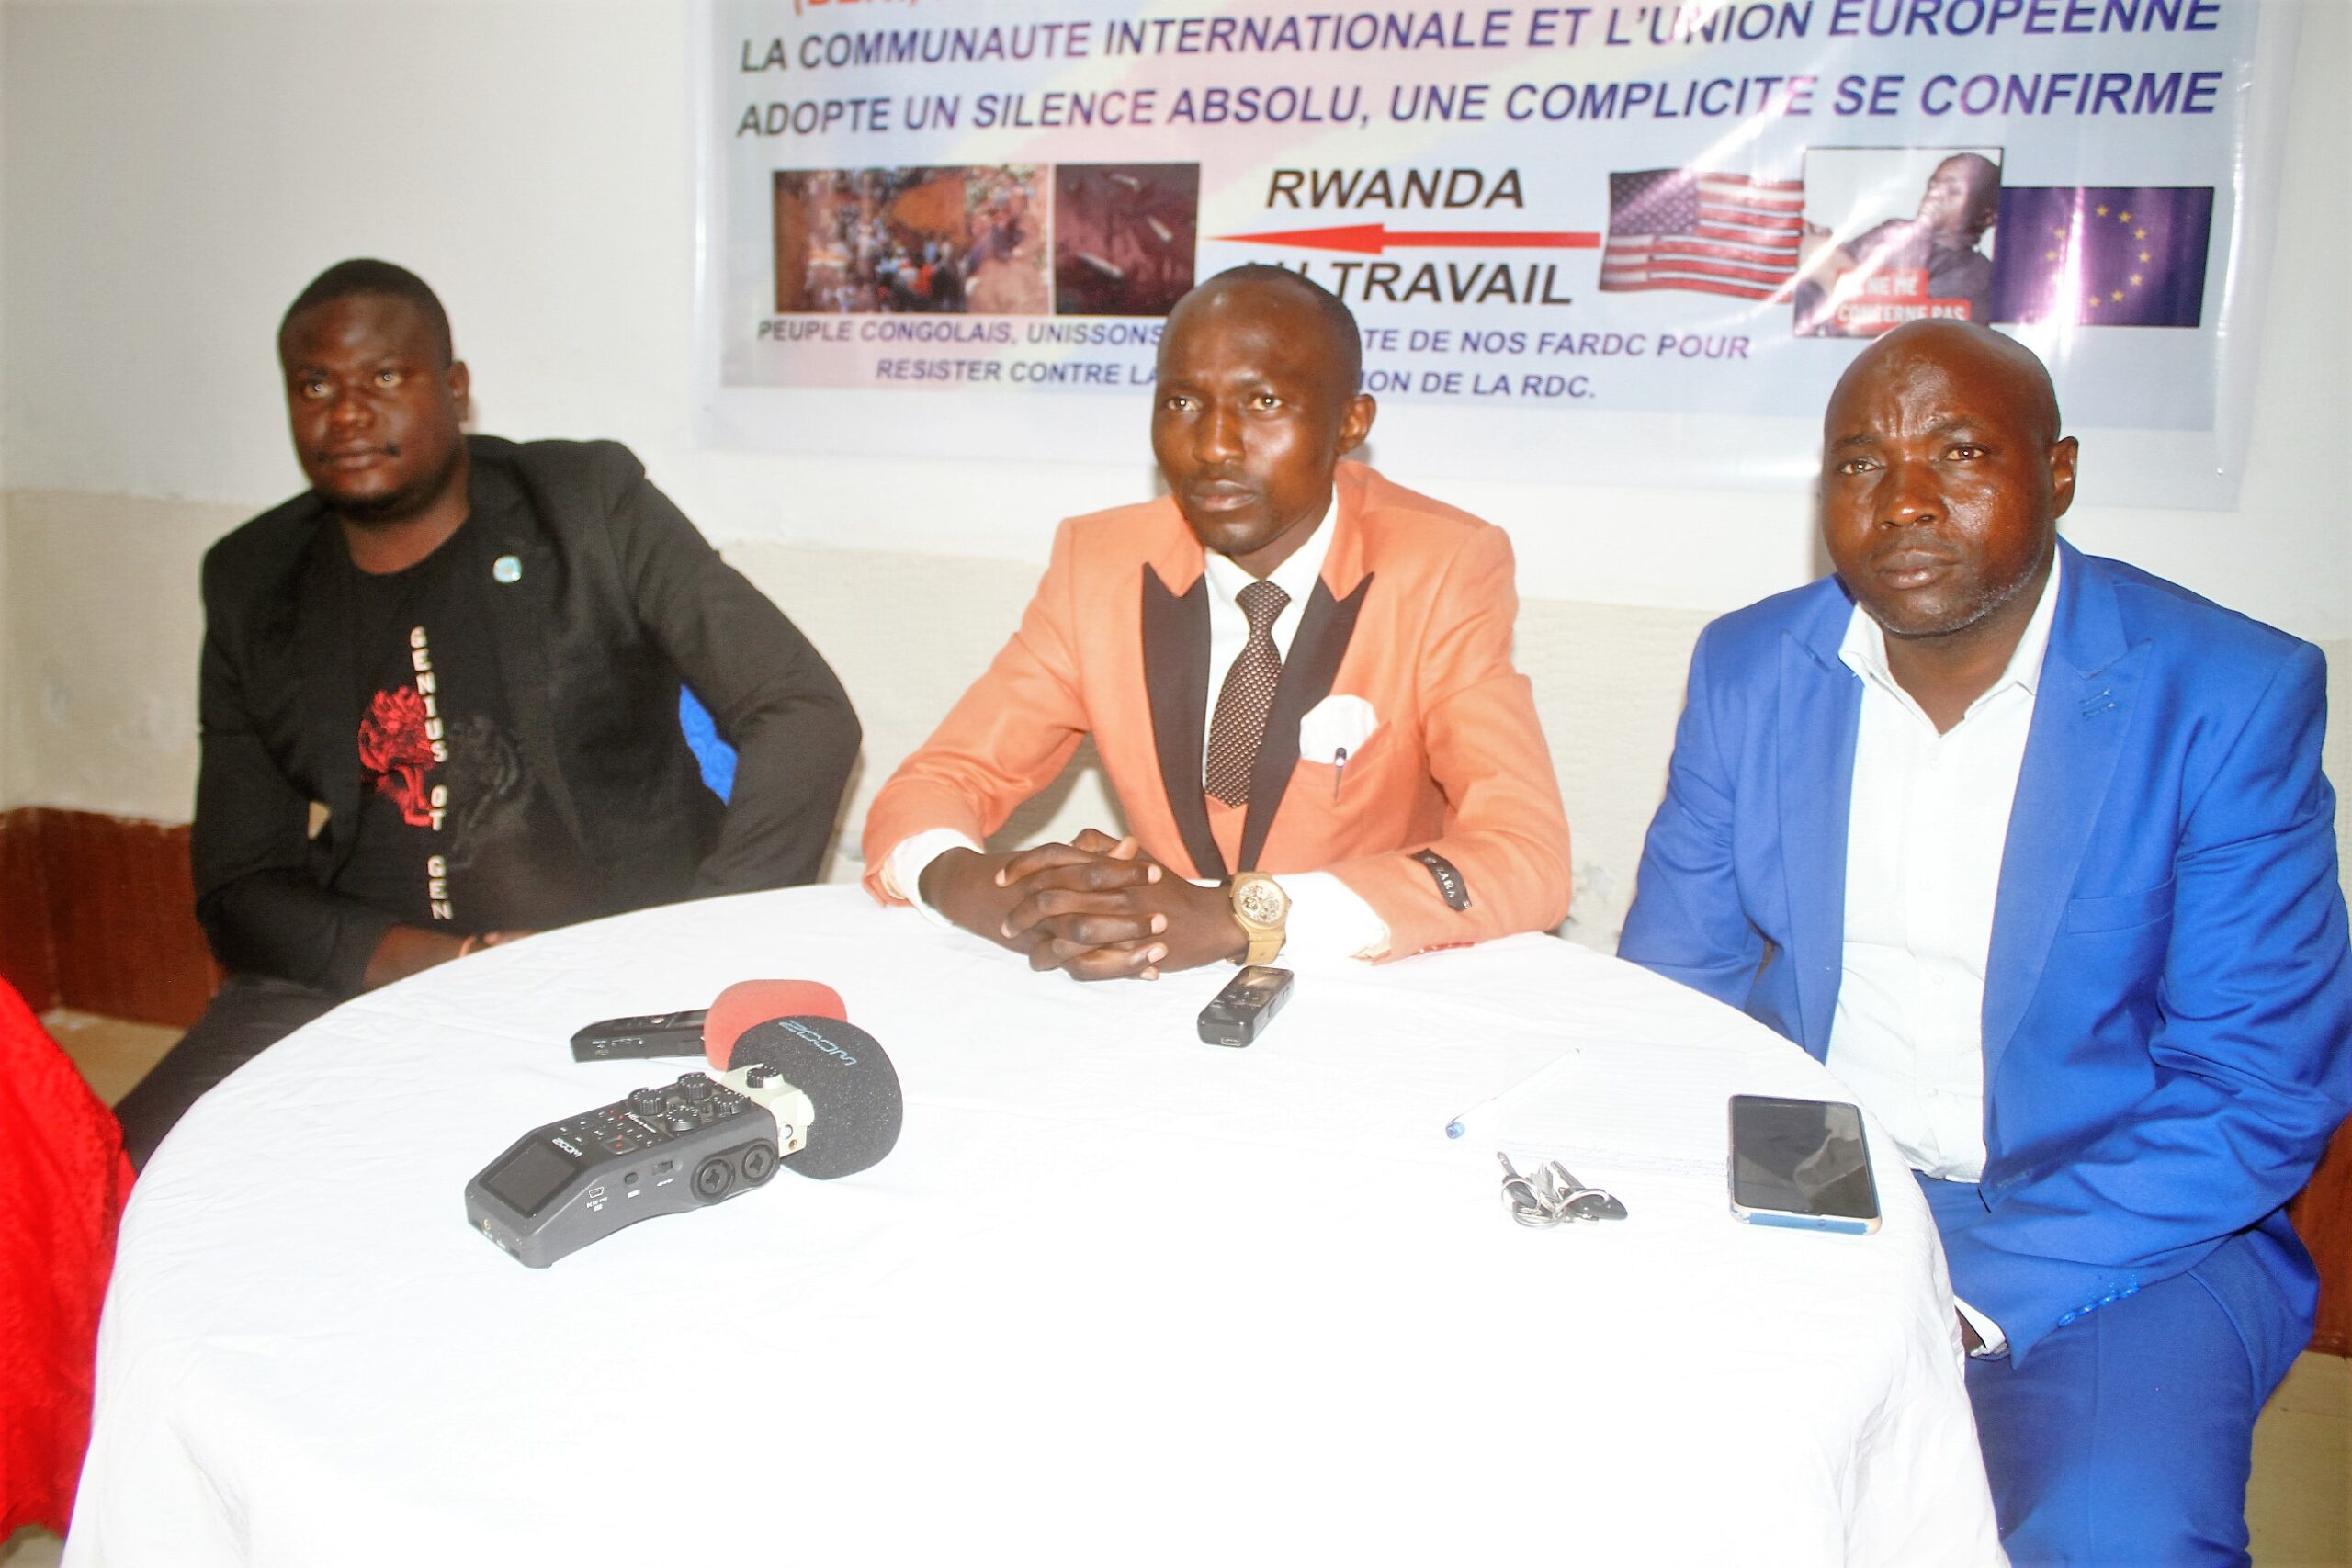 Nord  Kivu : Génocide en RDC, la  jeunesse  intercommunautaire dénonce  la  complicité de  la communauté  internationale.